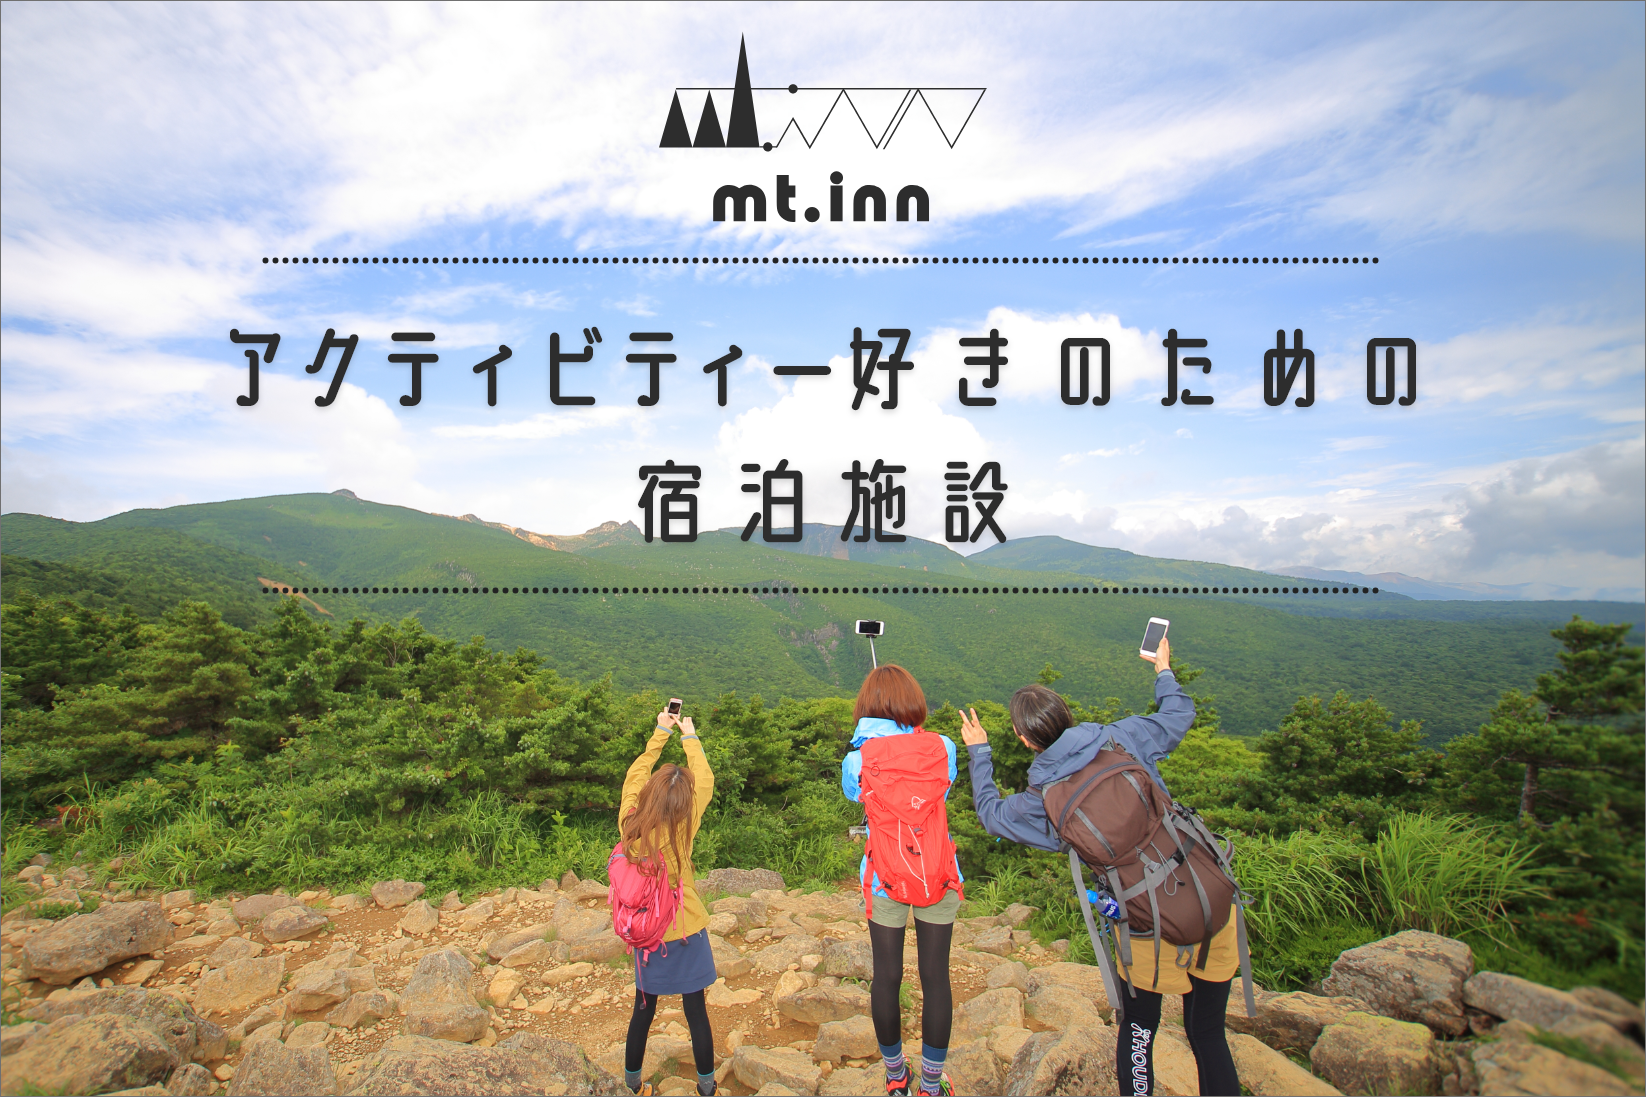 福島県岳温泉にアクティビティ好きのためのHubホテル 「mt. inn(マウントイン)」